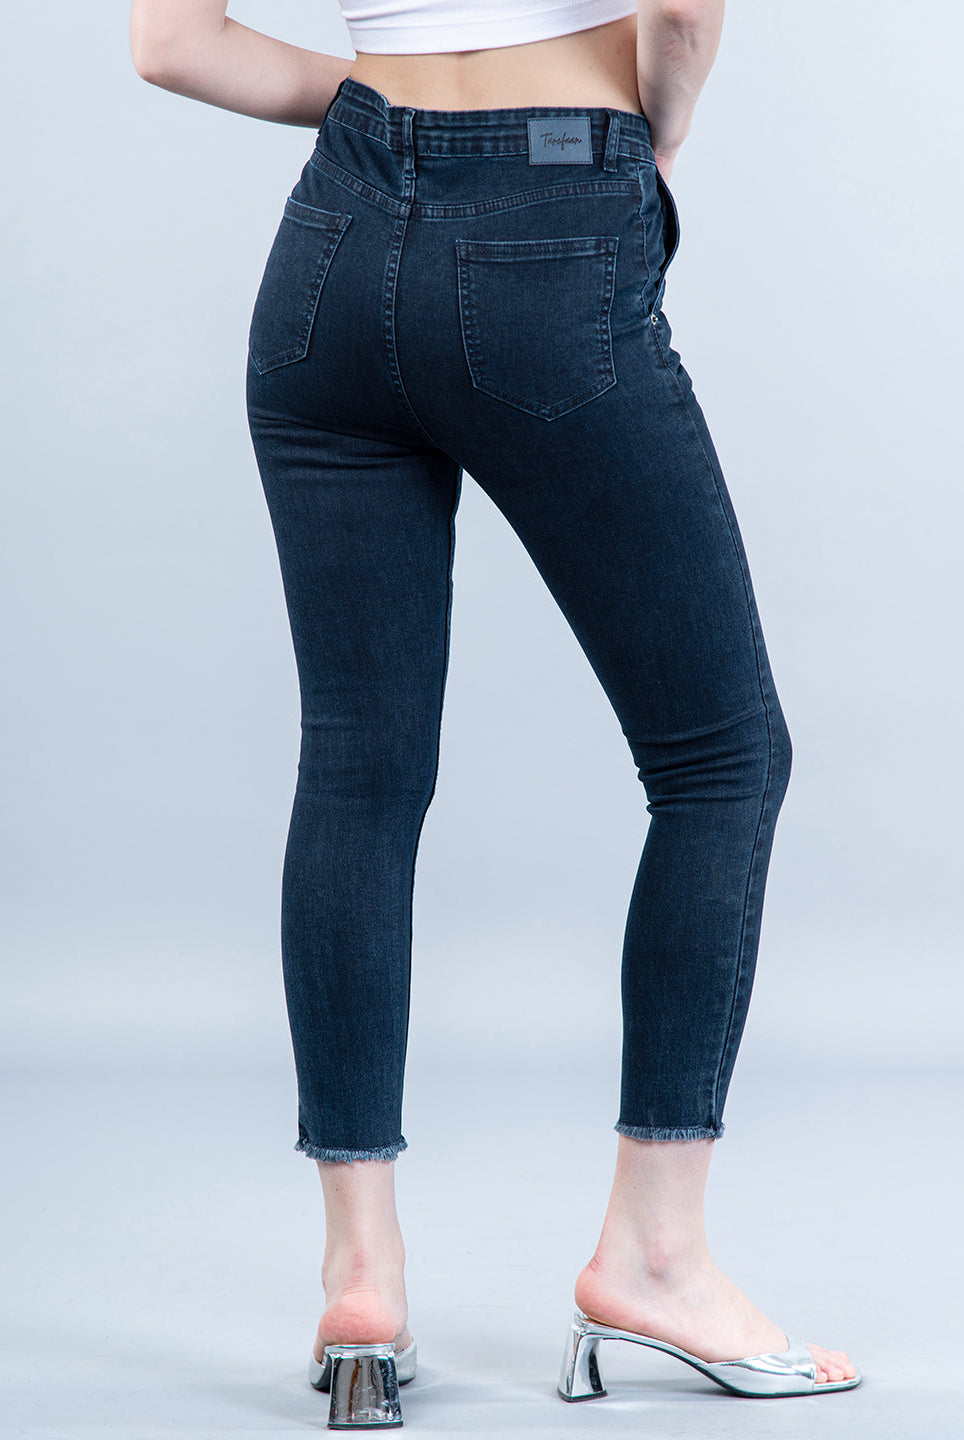 fancy jeans for girls